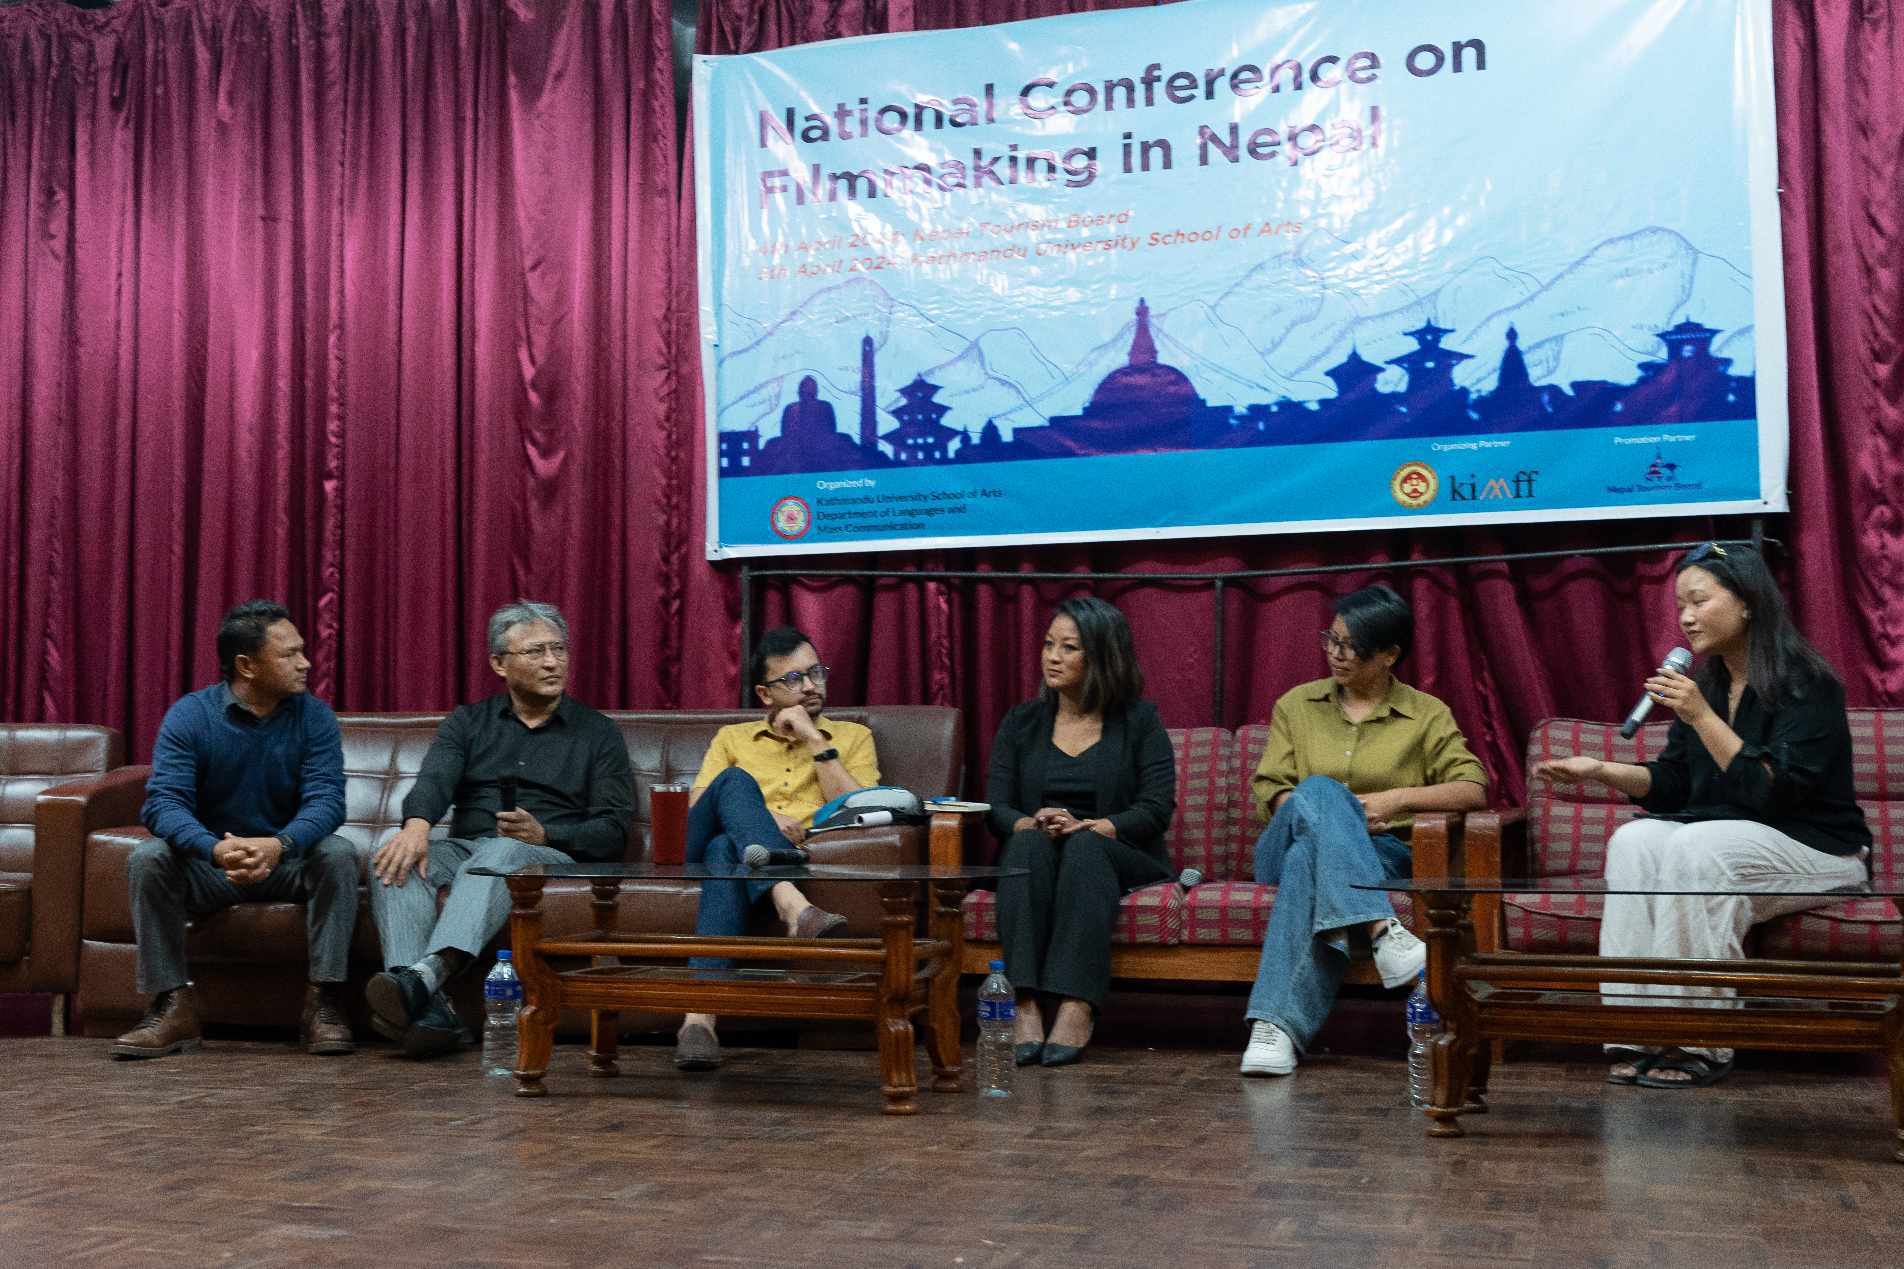 काठमाडौँ विश्वविद्यालयमा नेपाली चलचित्र निर्माणसम्बन्धी राष्ट्रिय गोष्ठी